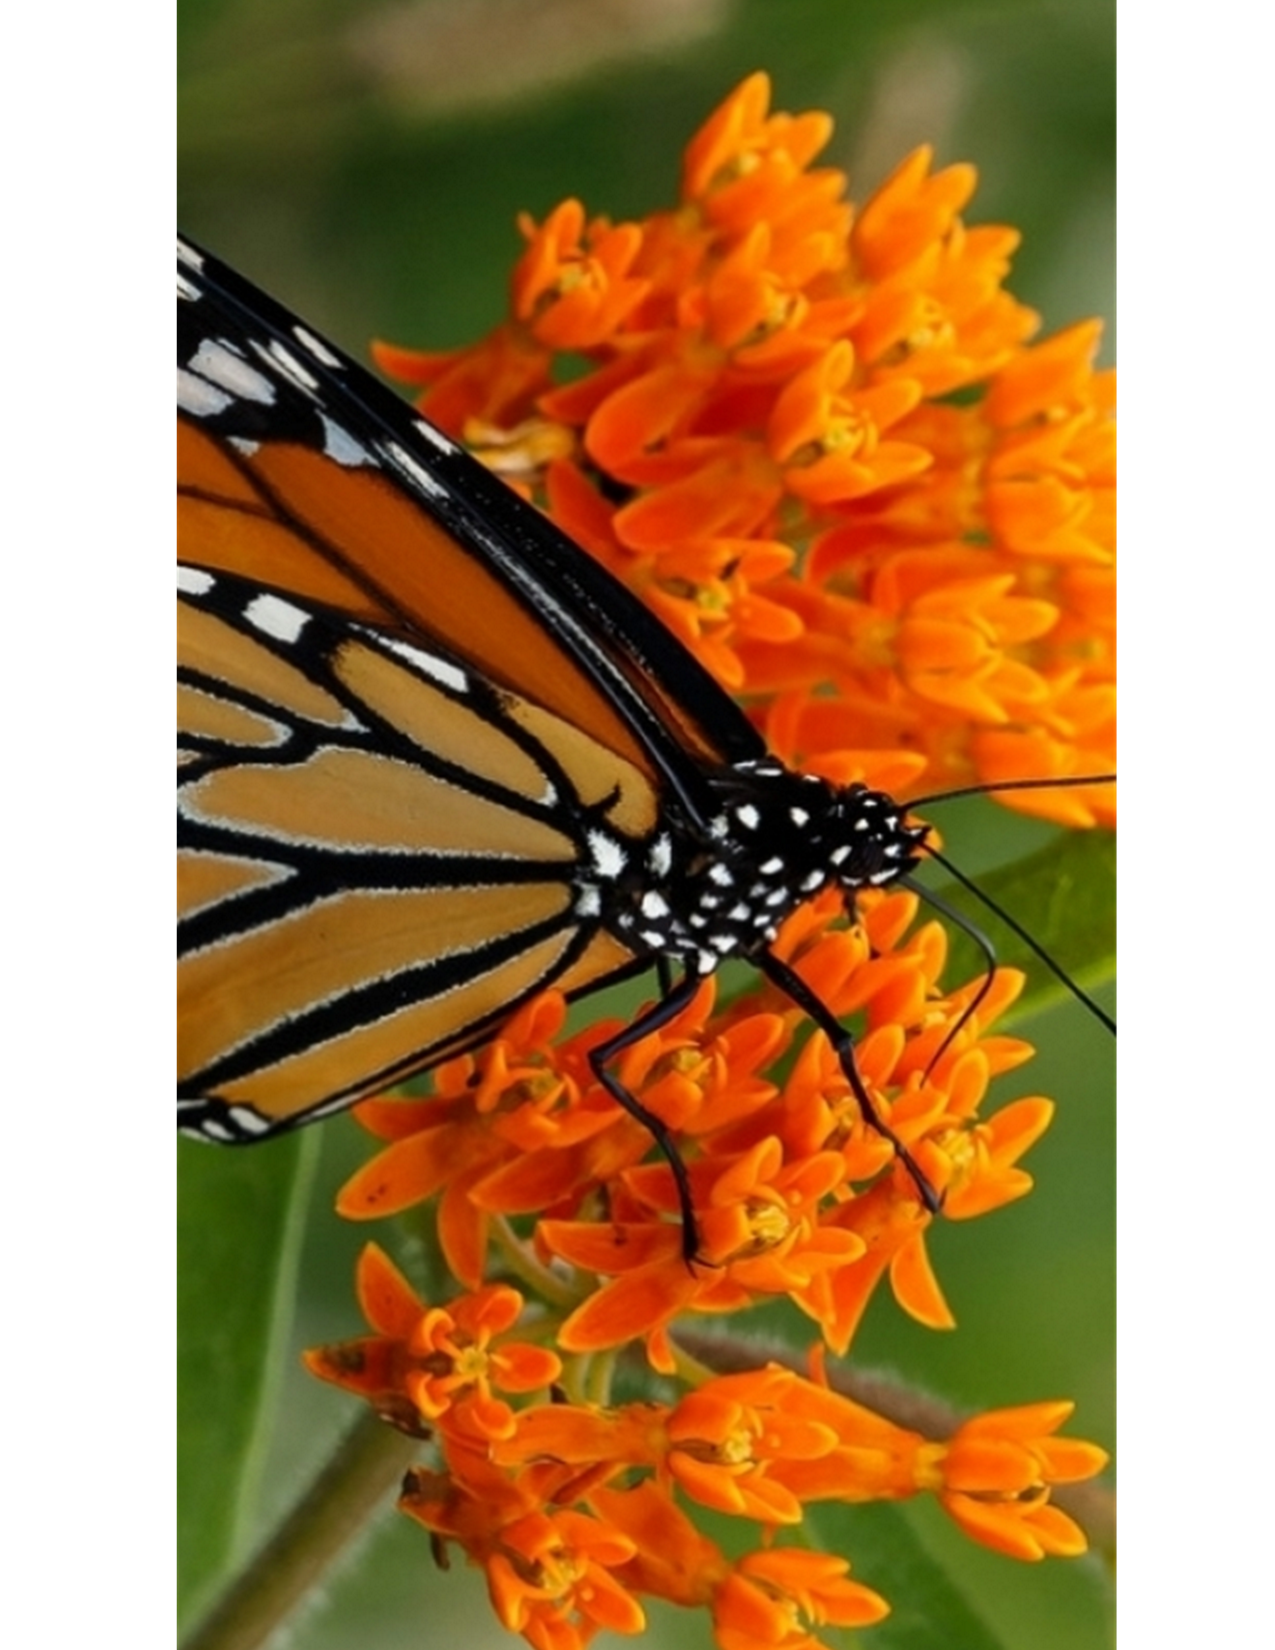 Monarch butterfly in Longwood Gardens